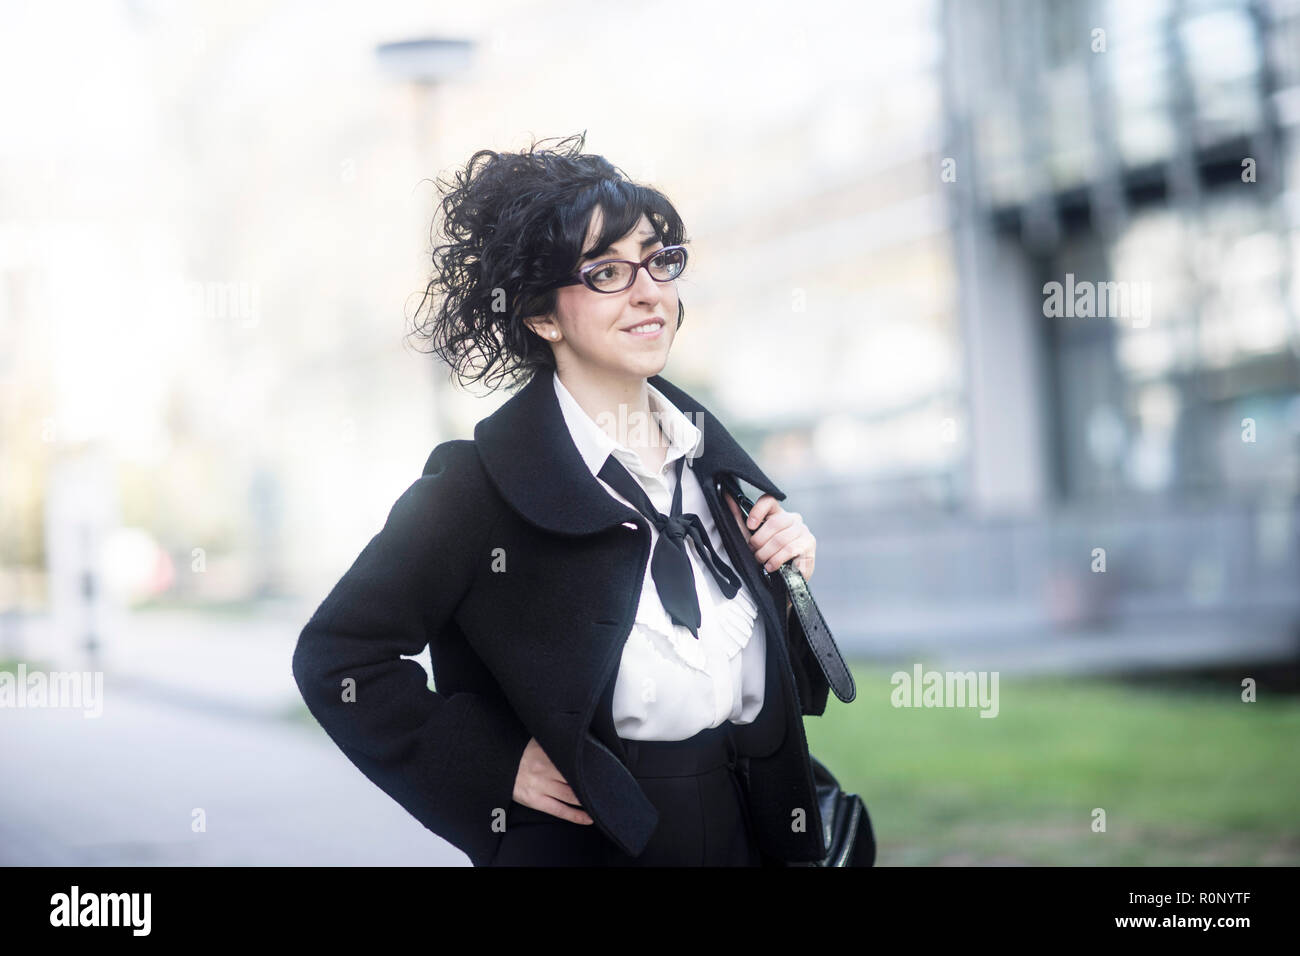 Portrait of a woman standing outdoors avec sa main sur sa hanche, Allemagne Banque D'Images